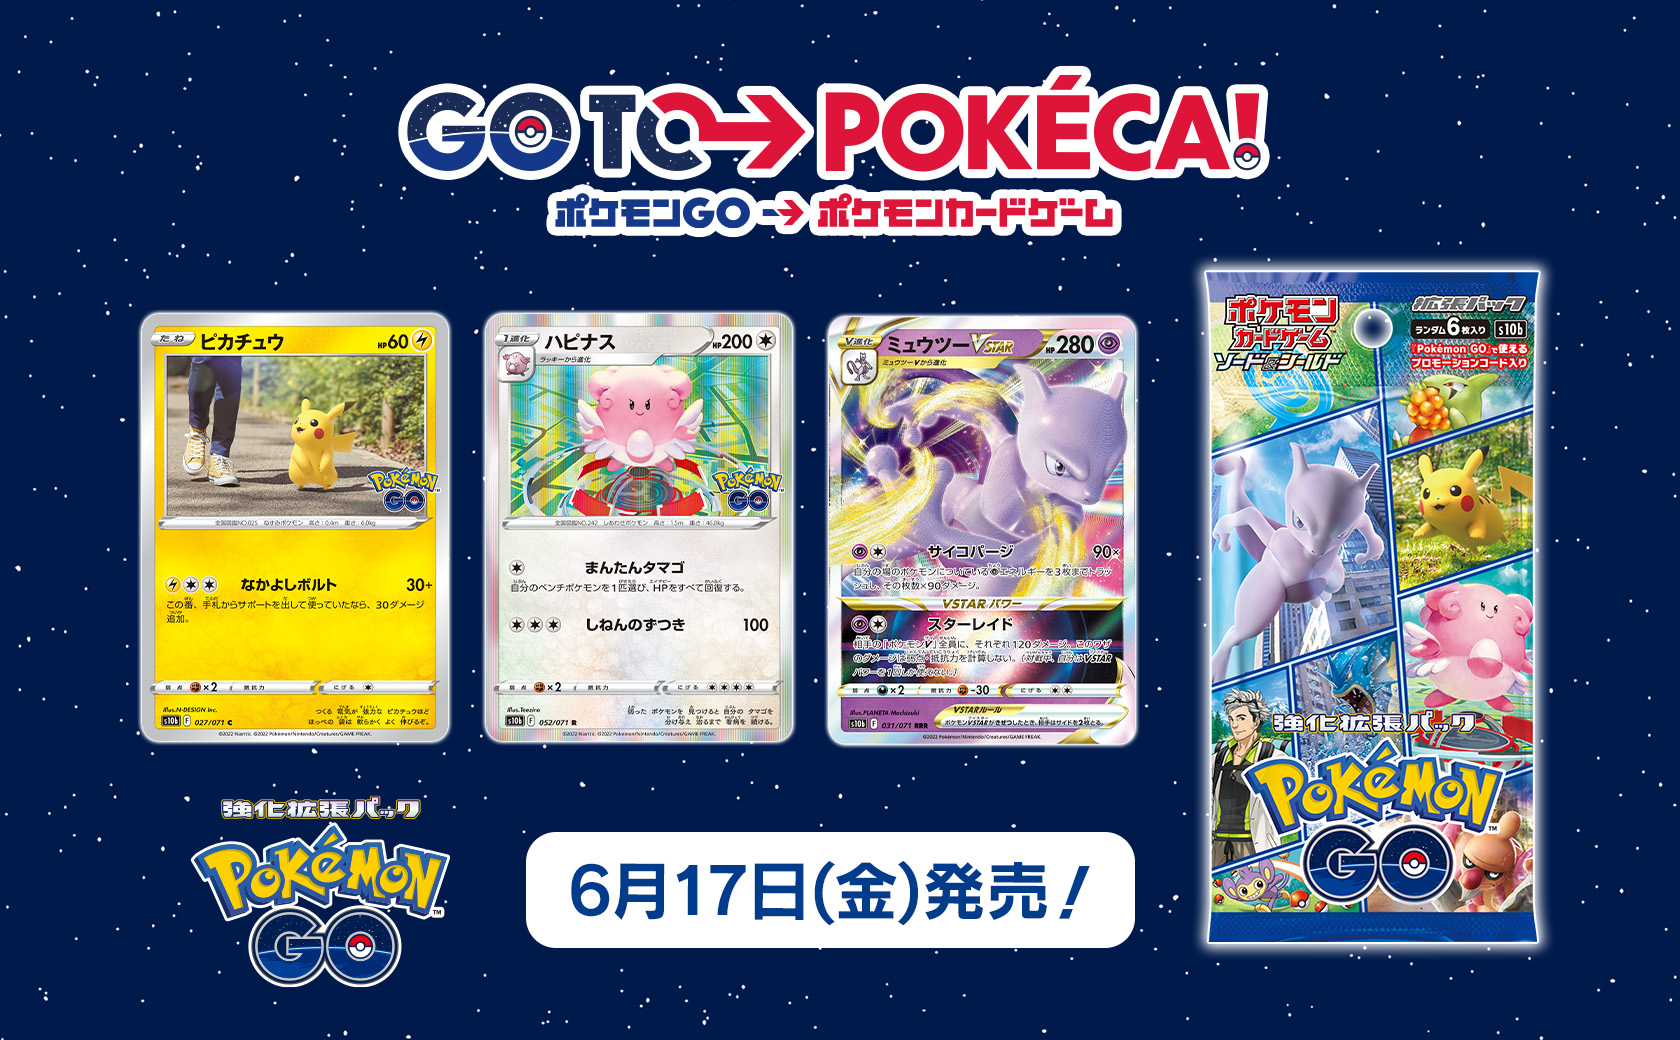 ポケモンカードゲーム」，強化拡張パック“Pokémon GO”を6月17日に発売